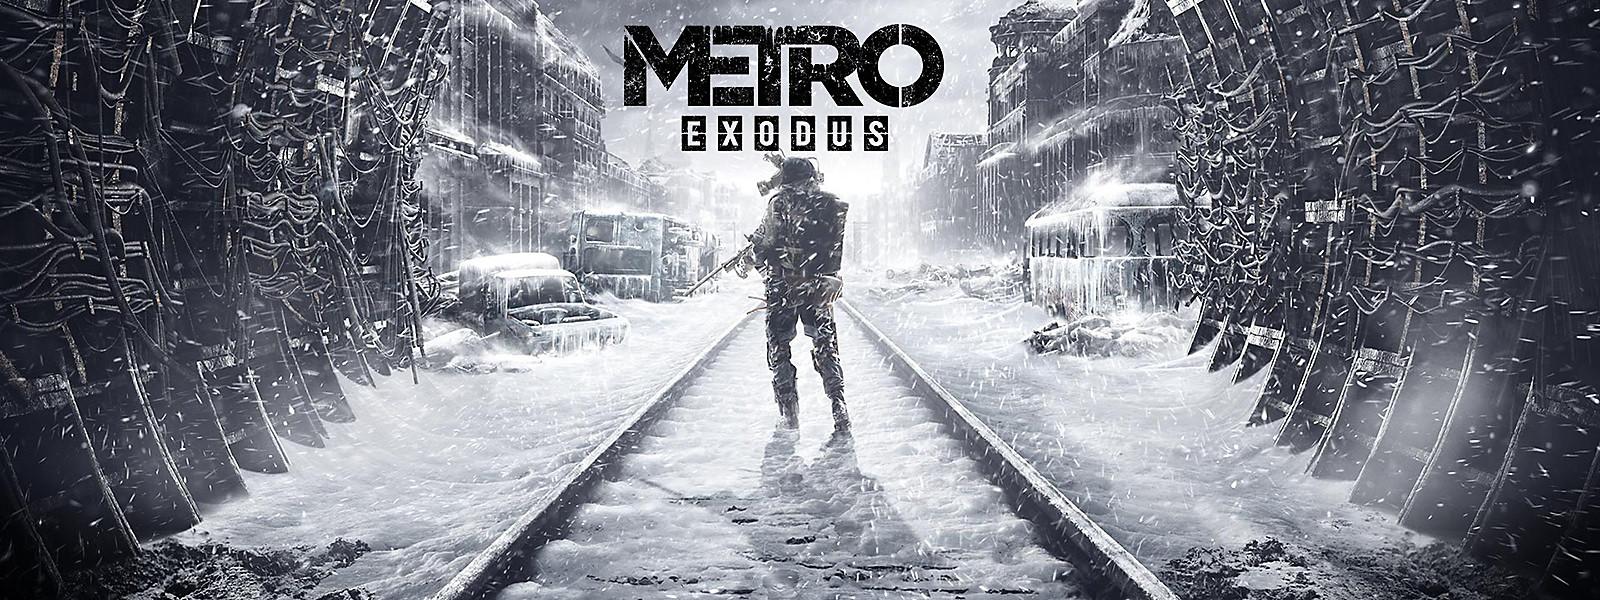 Metro Exodus Logo - Metro Exodus Game